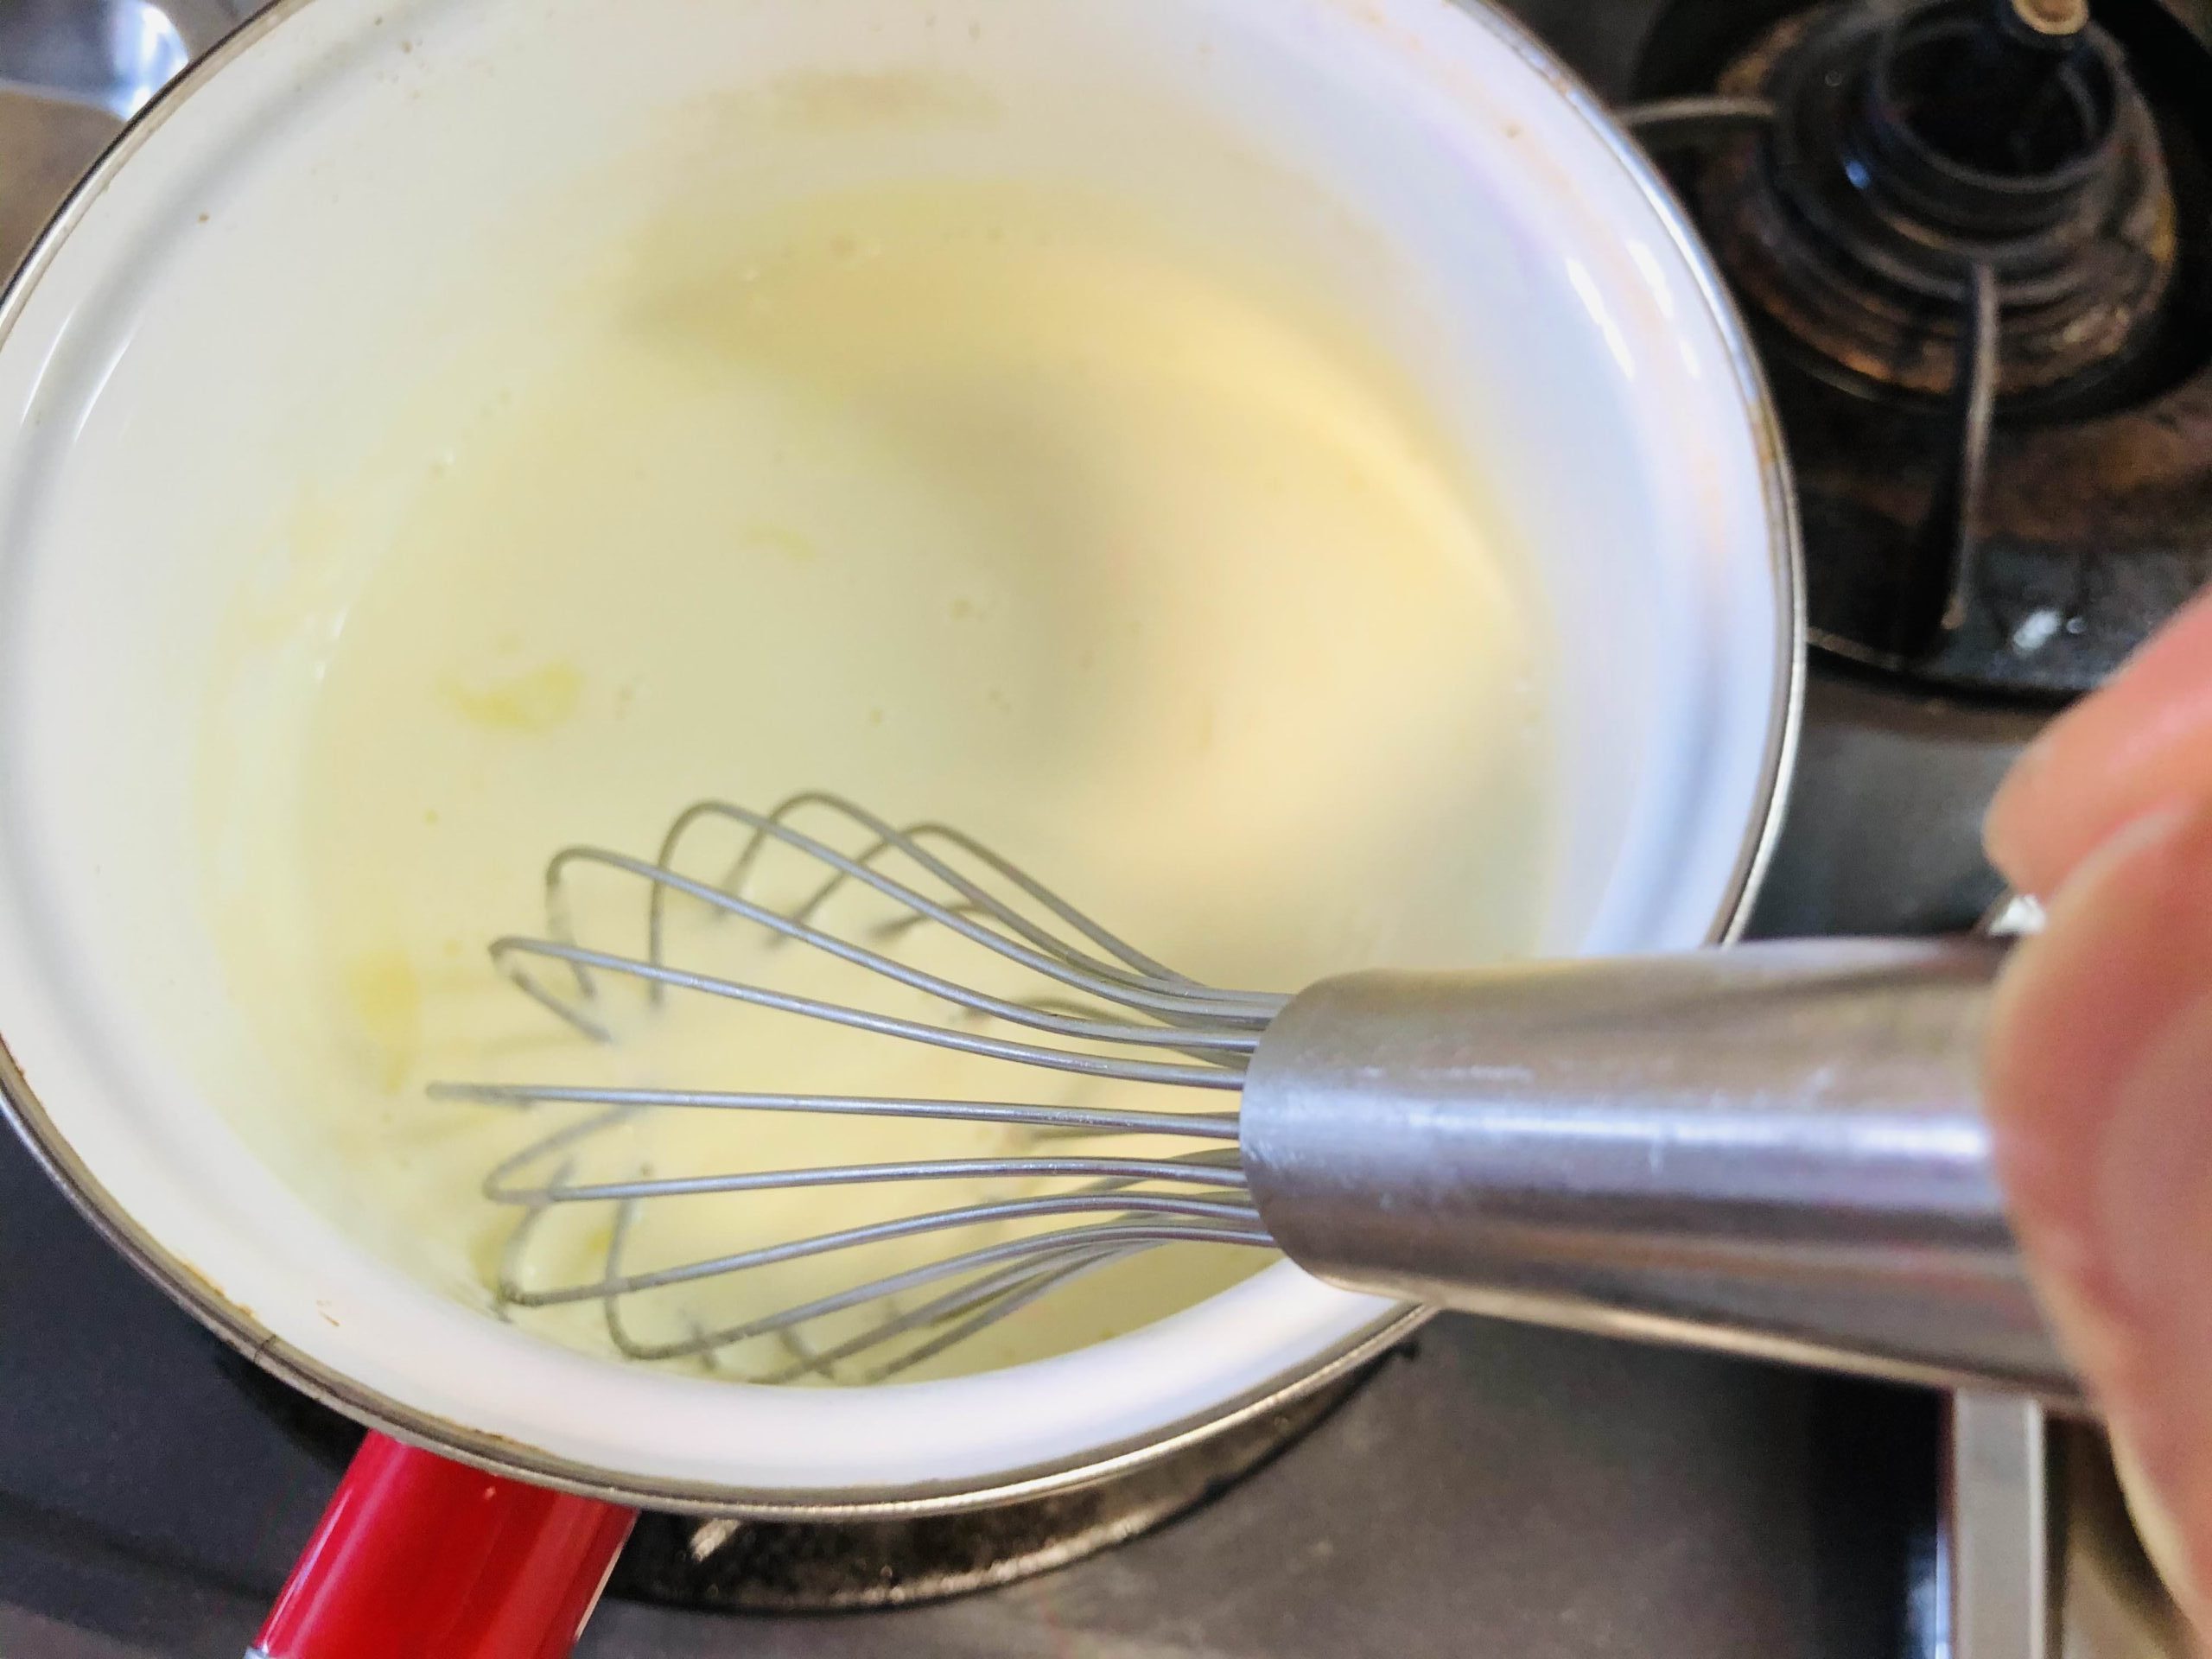 少し柔らかくなったゼラチンの水分を絞りクリームの鍋に入れホイッパーに持ち替えてゼラチンを溶かし混ぜる様子の画像です